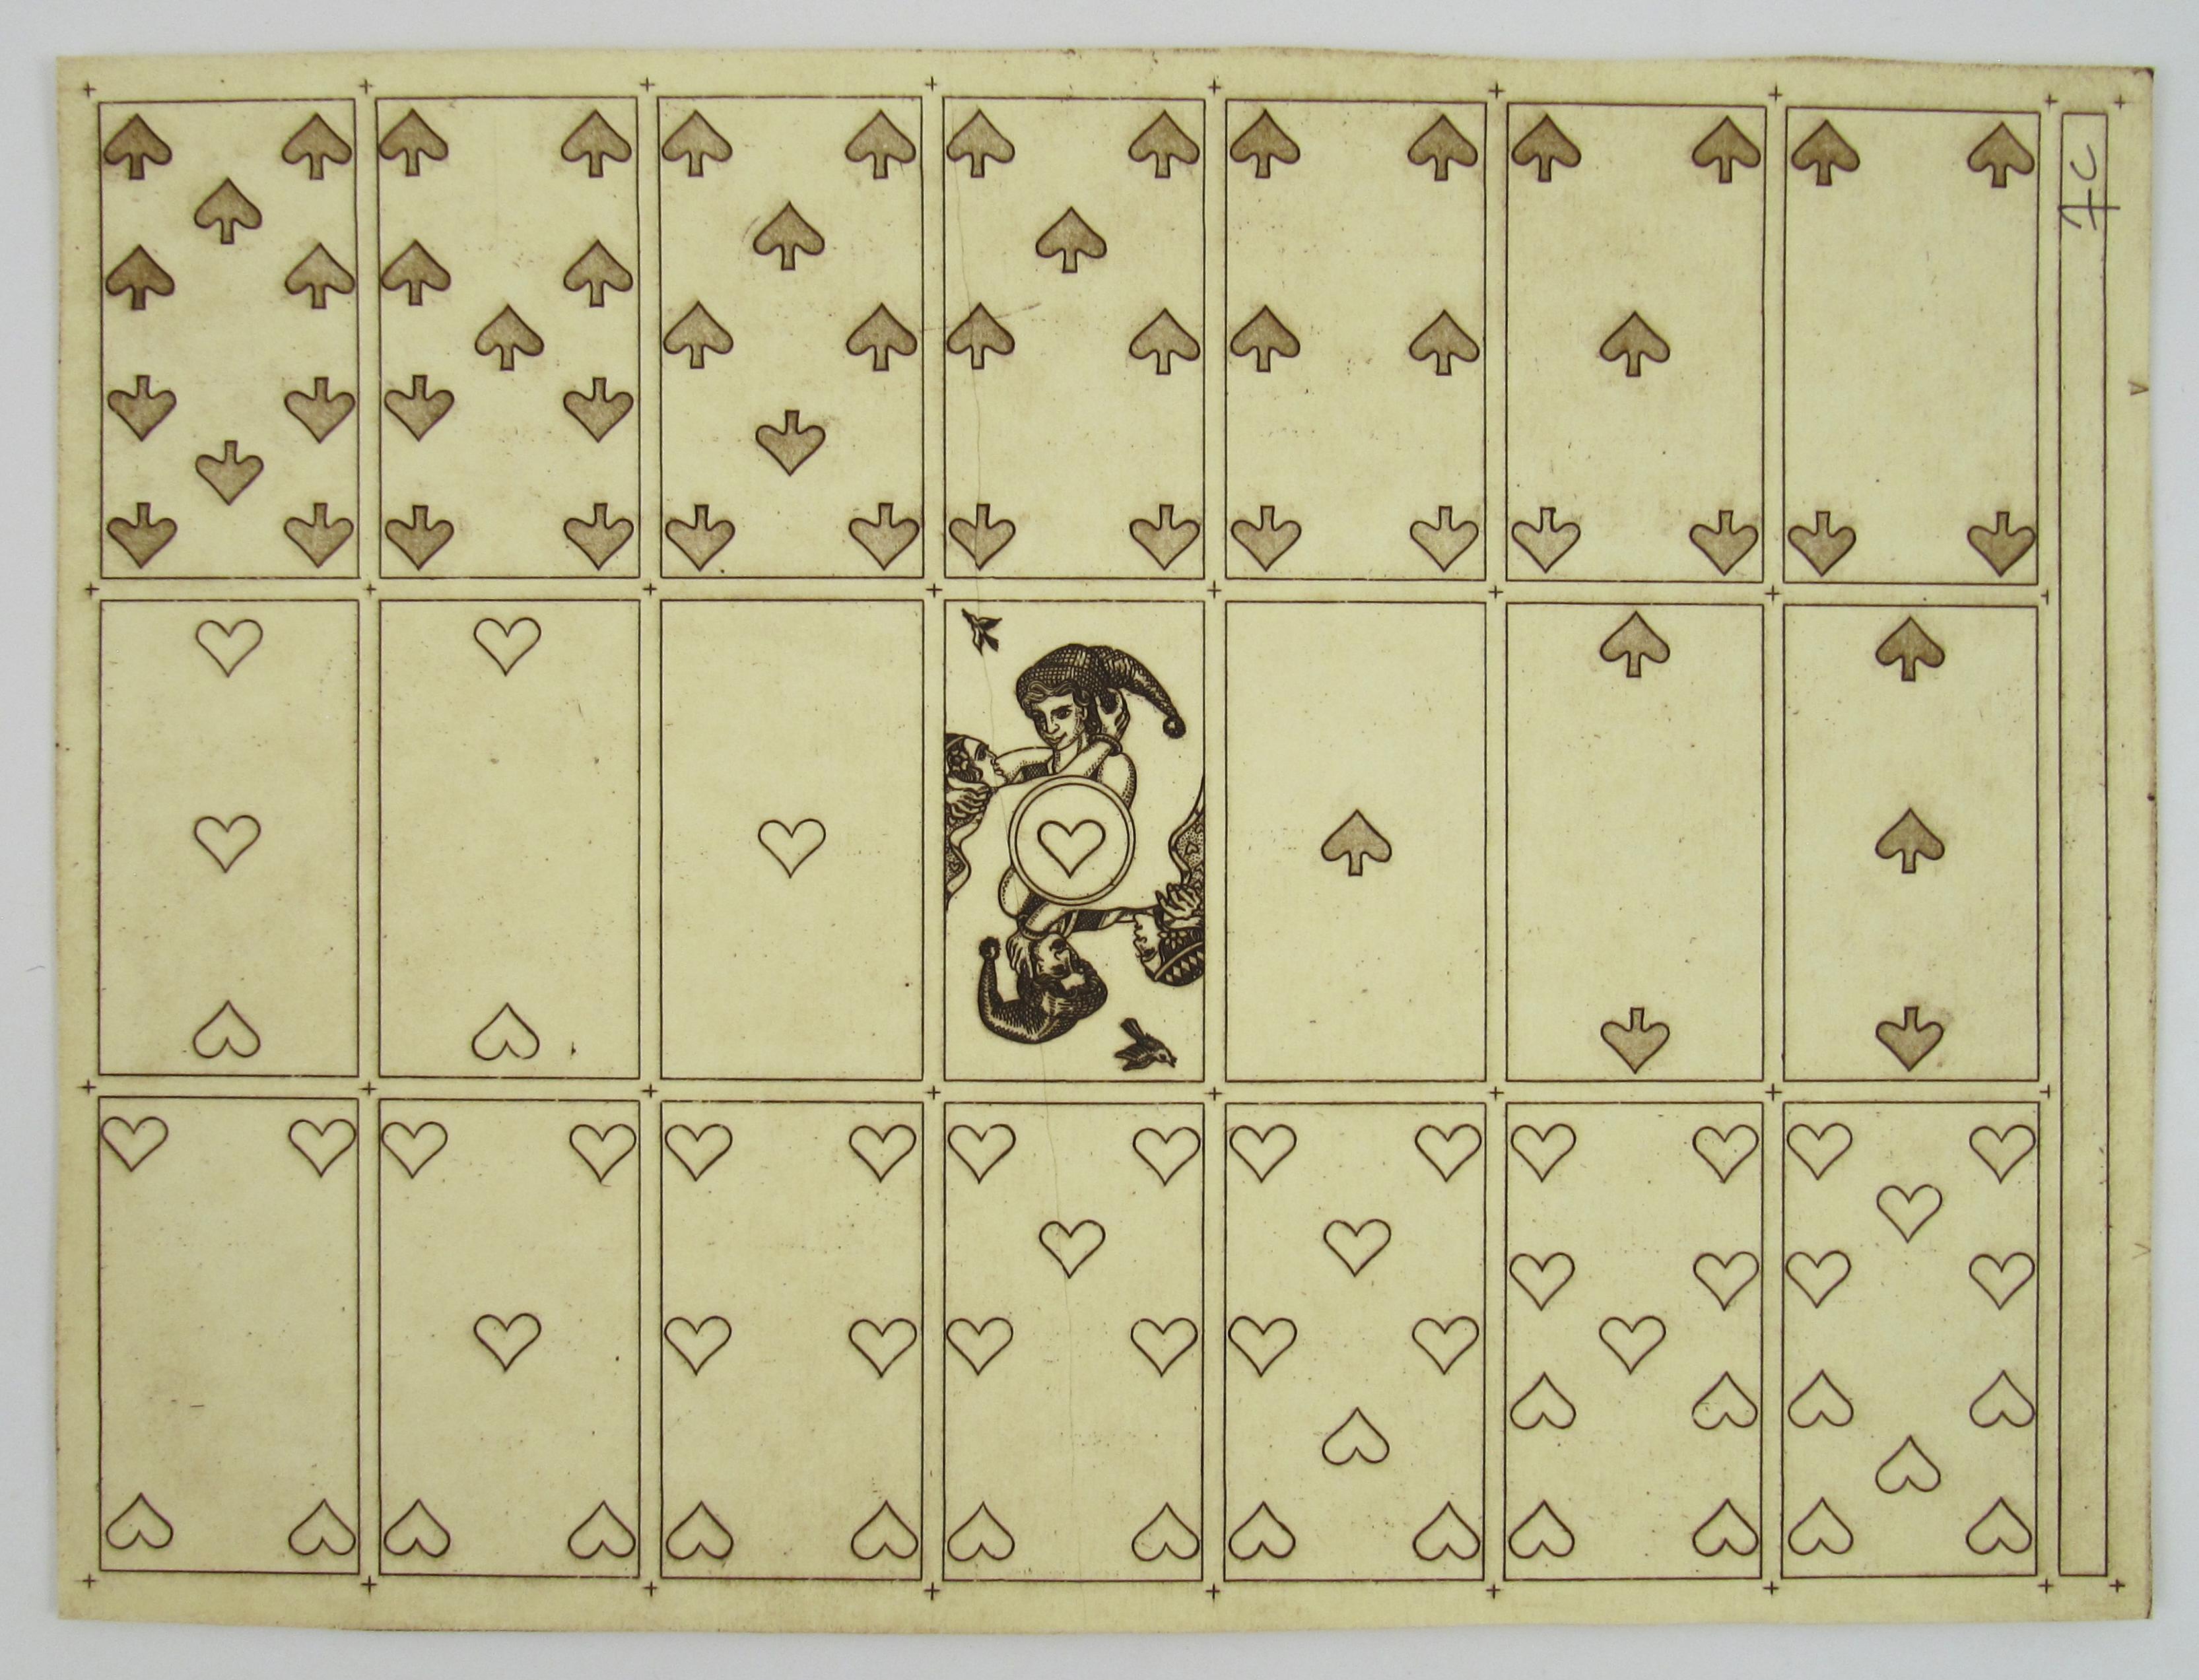 Merry Andrew Nr. 30, 1989 von Karl Gerich of Bath – zwei Kartendruckböden mit Spielkartenmuster – Print von Karl Alexander Gerich